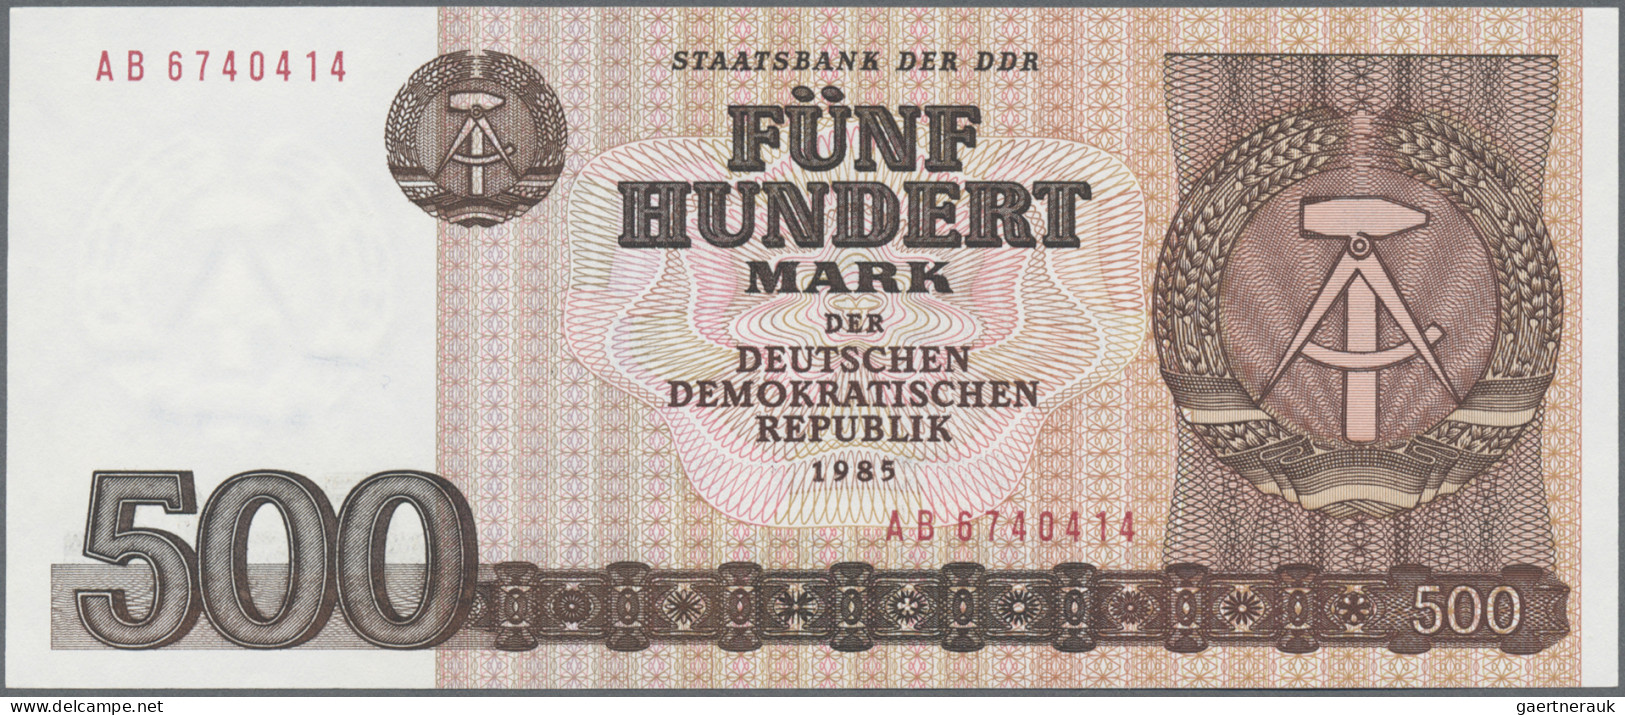 Deutschland - DDR: Staatsbank der DDR, 1971/75 und 1985, Lot mit 12 Banknoten un